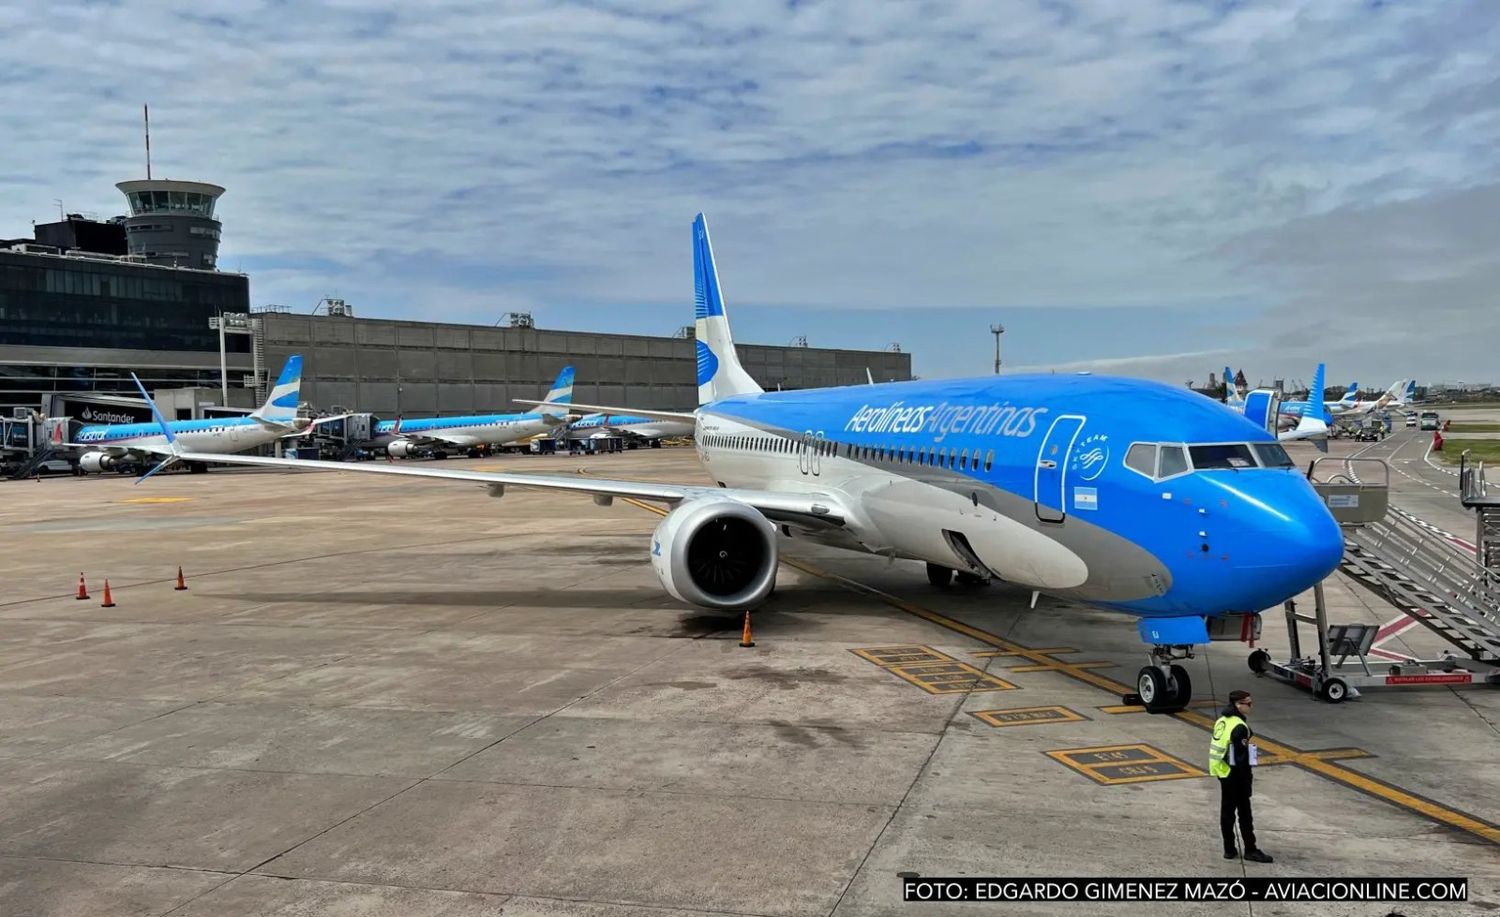 "Bahía Blanca-Aeroparque es la quinta ruta con mayor ocupación del país”, aseveró el jefe del aeropuerto bahiense